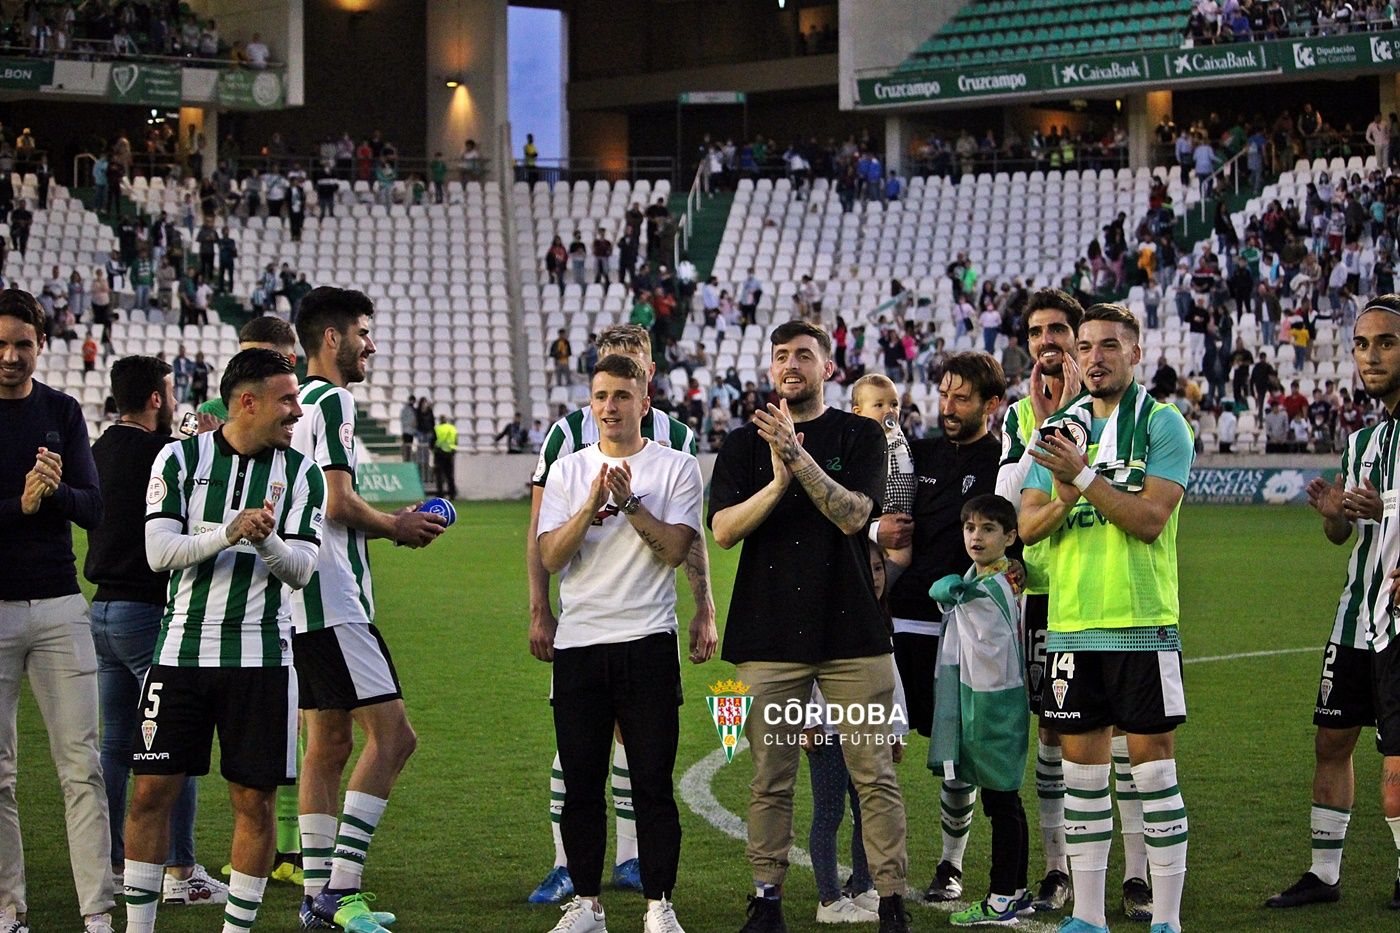 GALERÍA | La victoria del Córdoba CF (2-0) ante el Villanovense, en imágenes